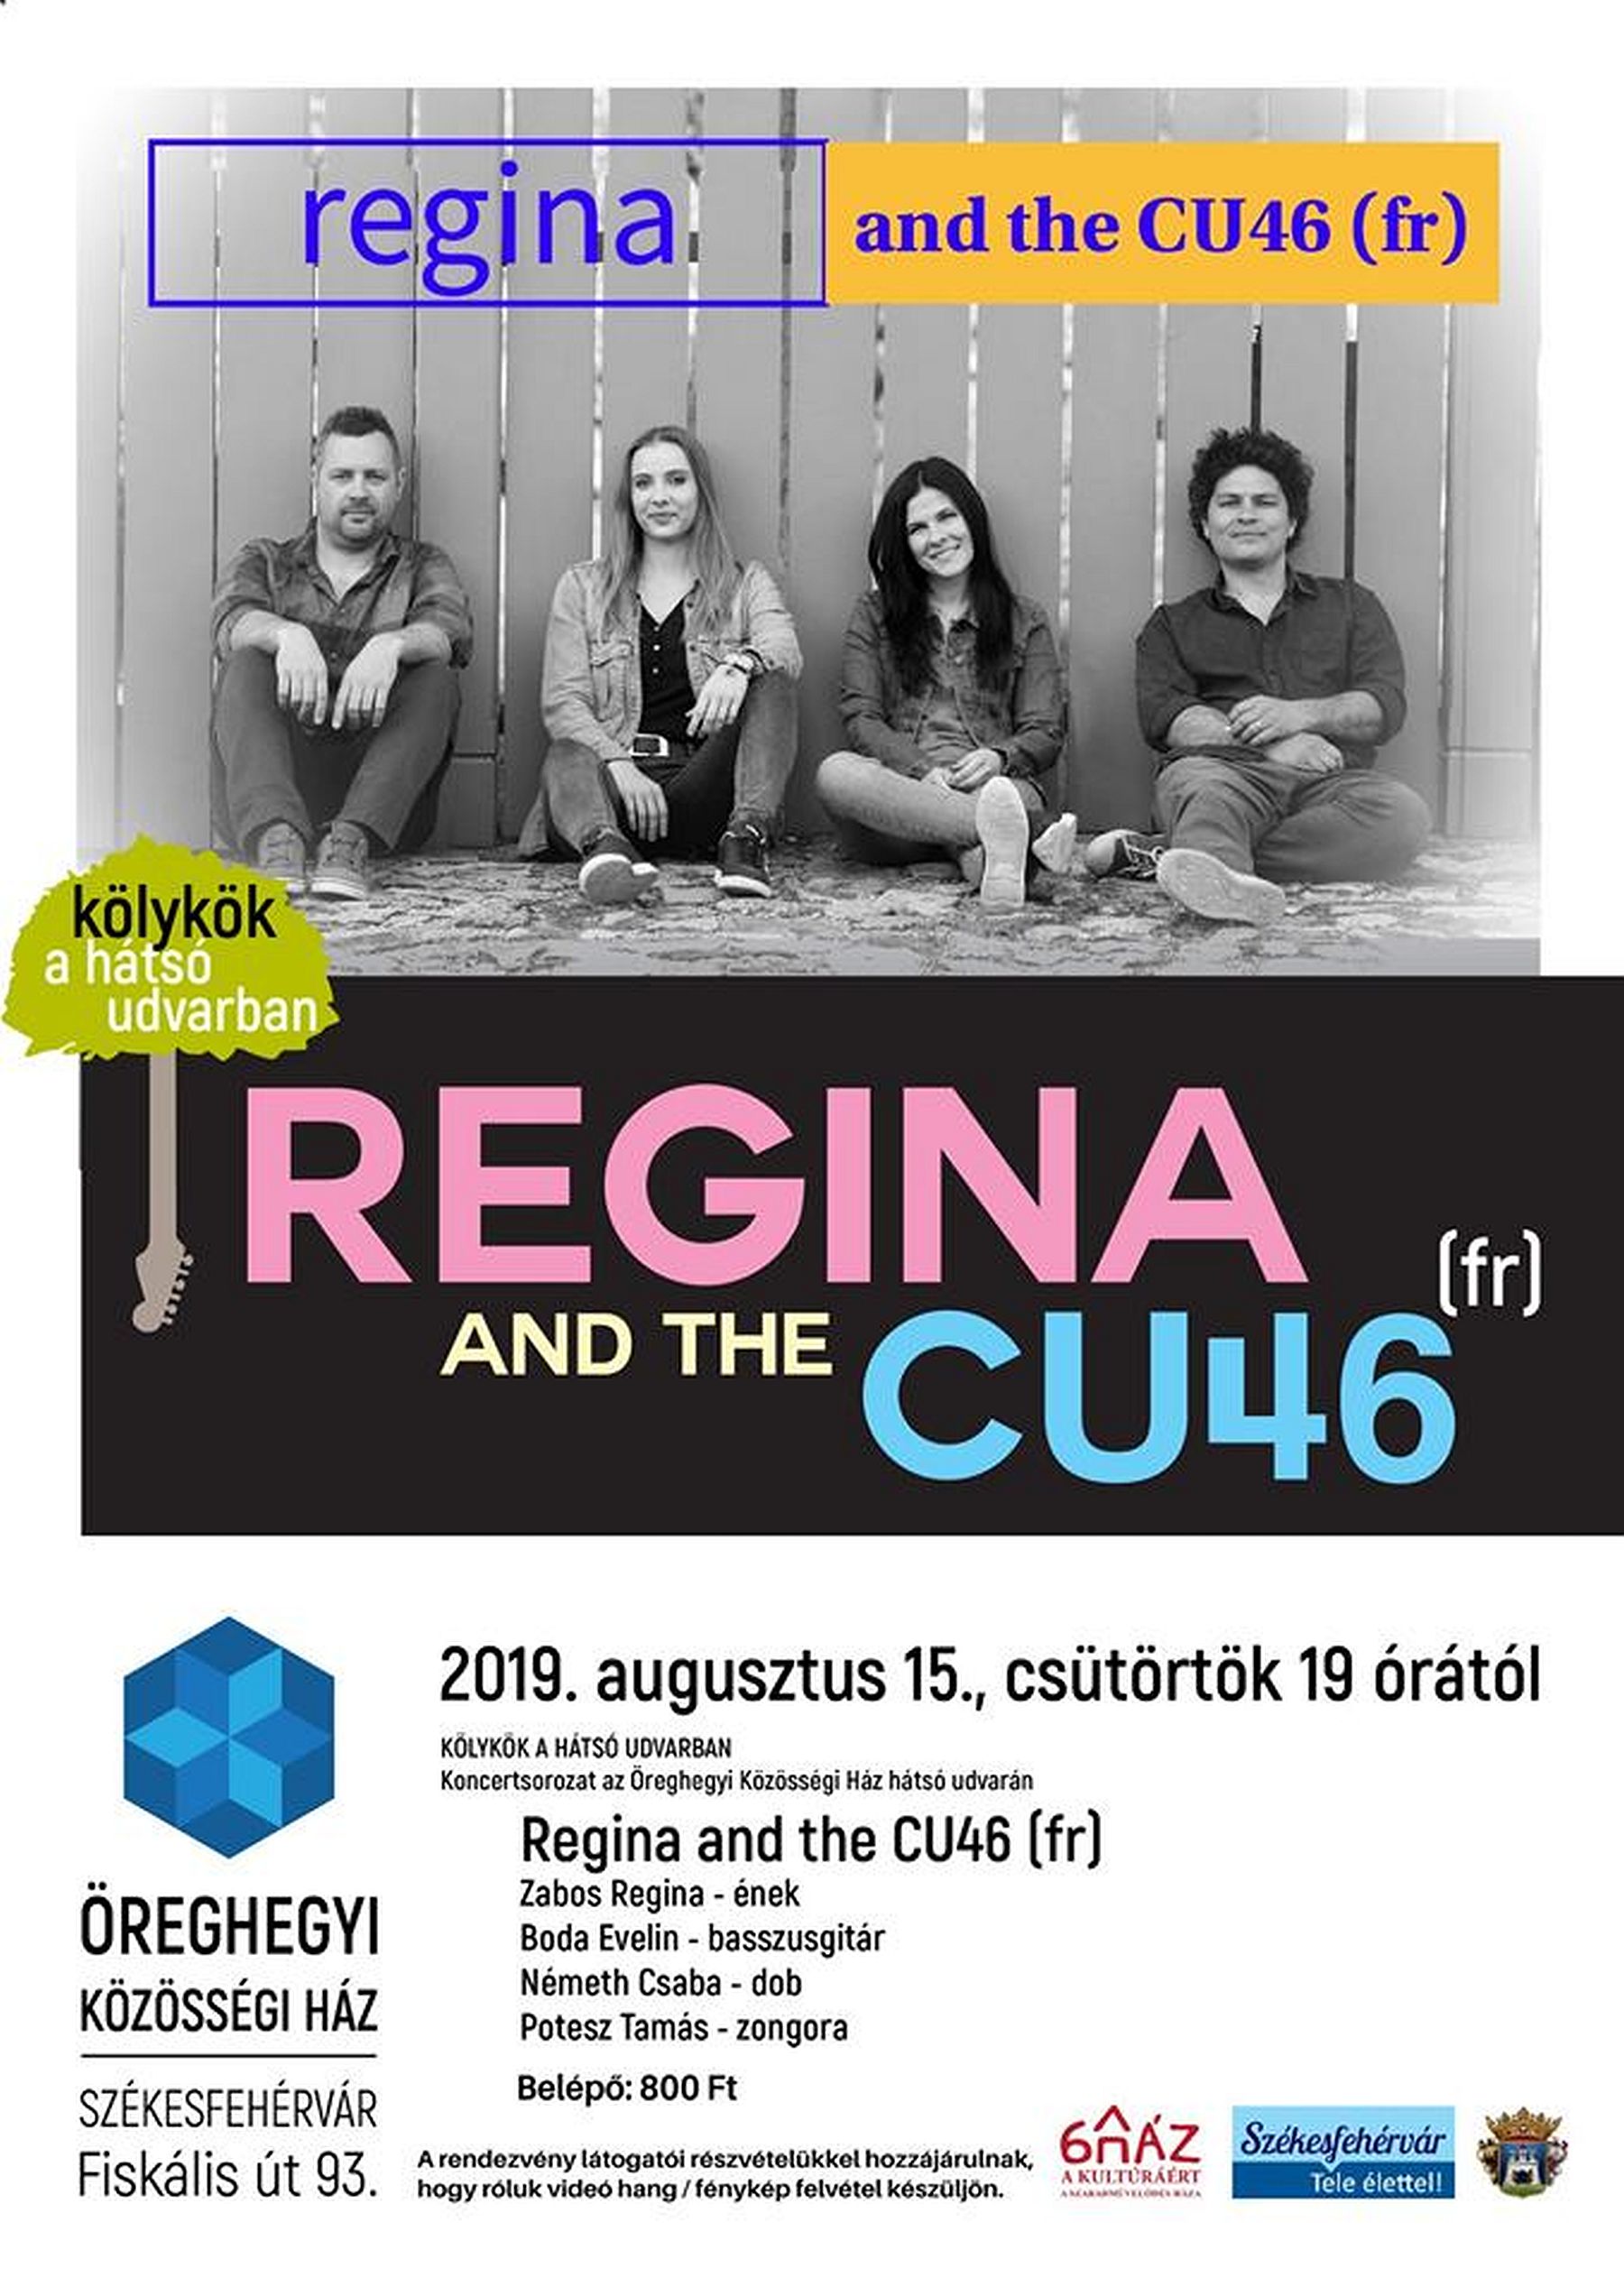 A Regina and the CU46 együttes lép fel az Öreghegyi Közösségi Házban